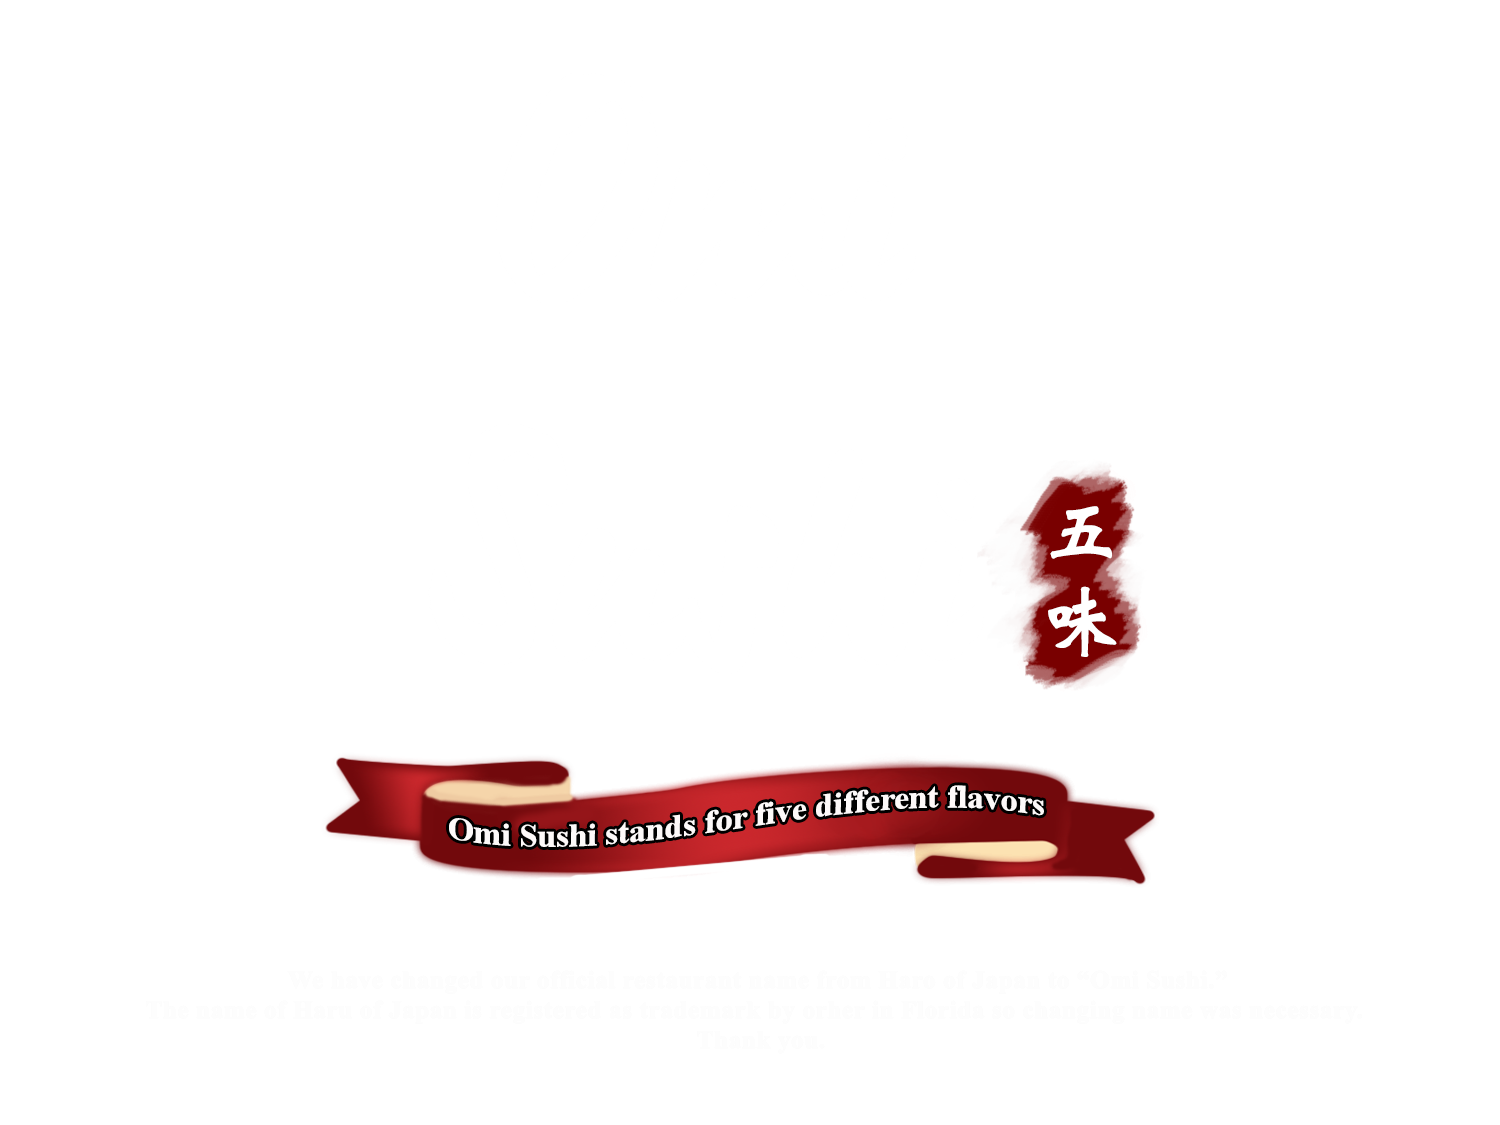 Omi sushi